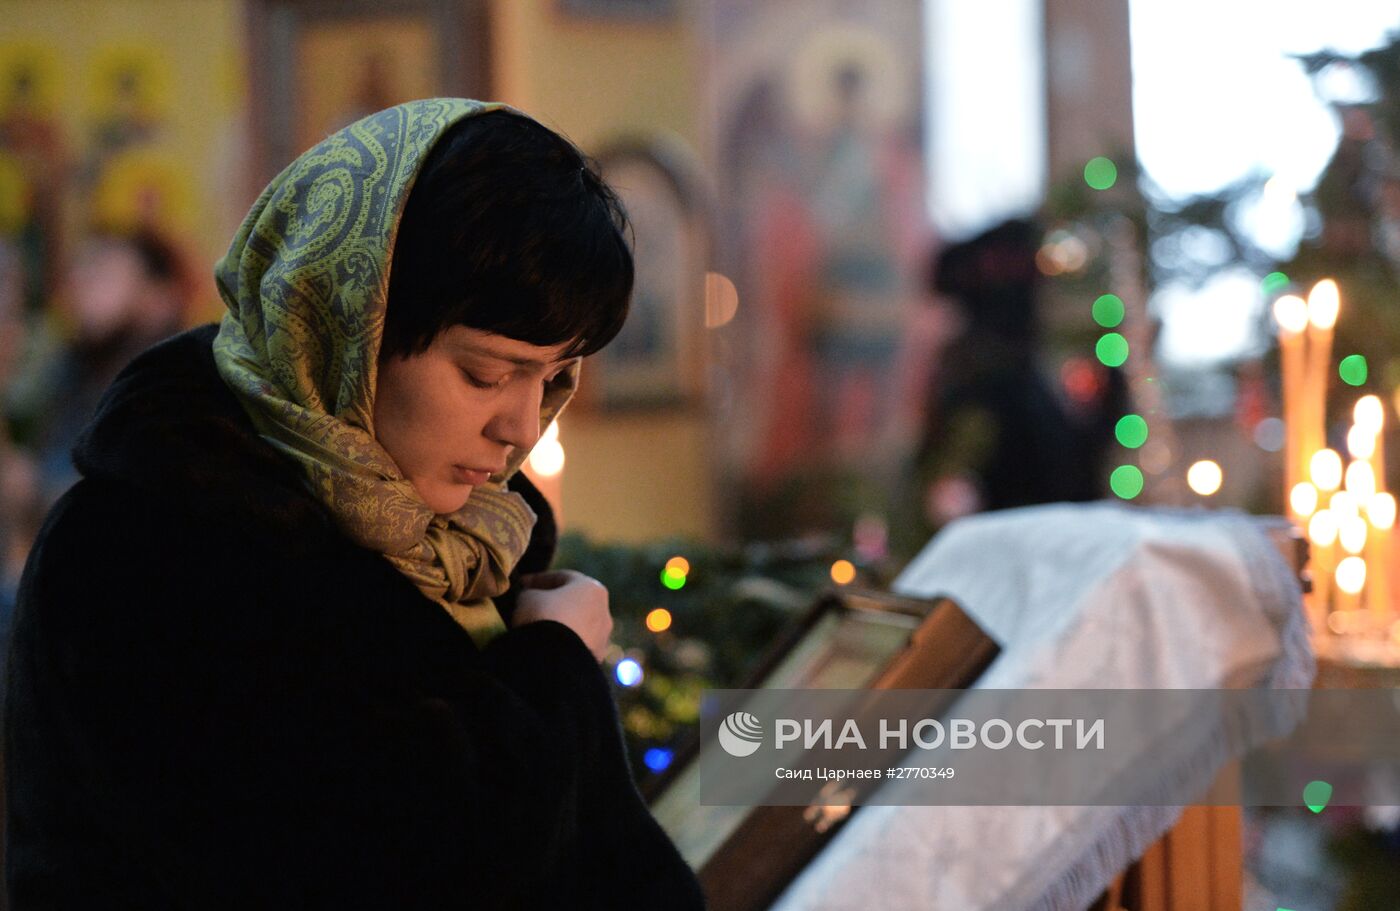 Празднование Рождества Христова в городах России